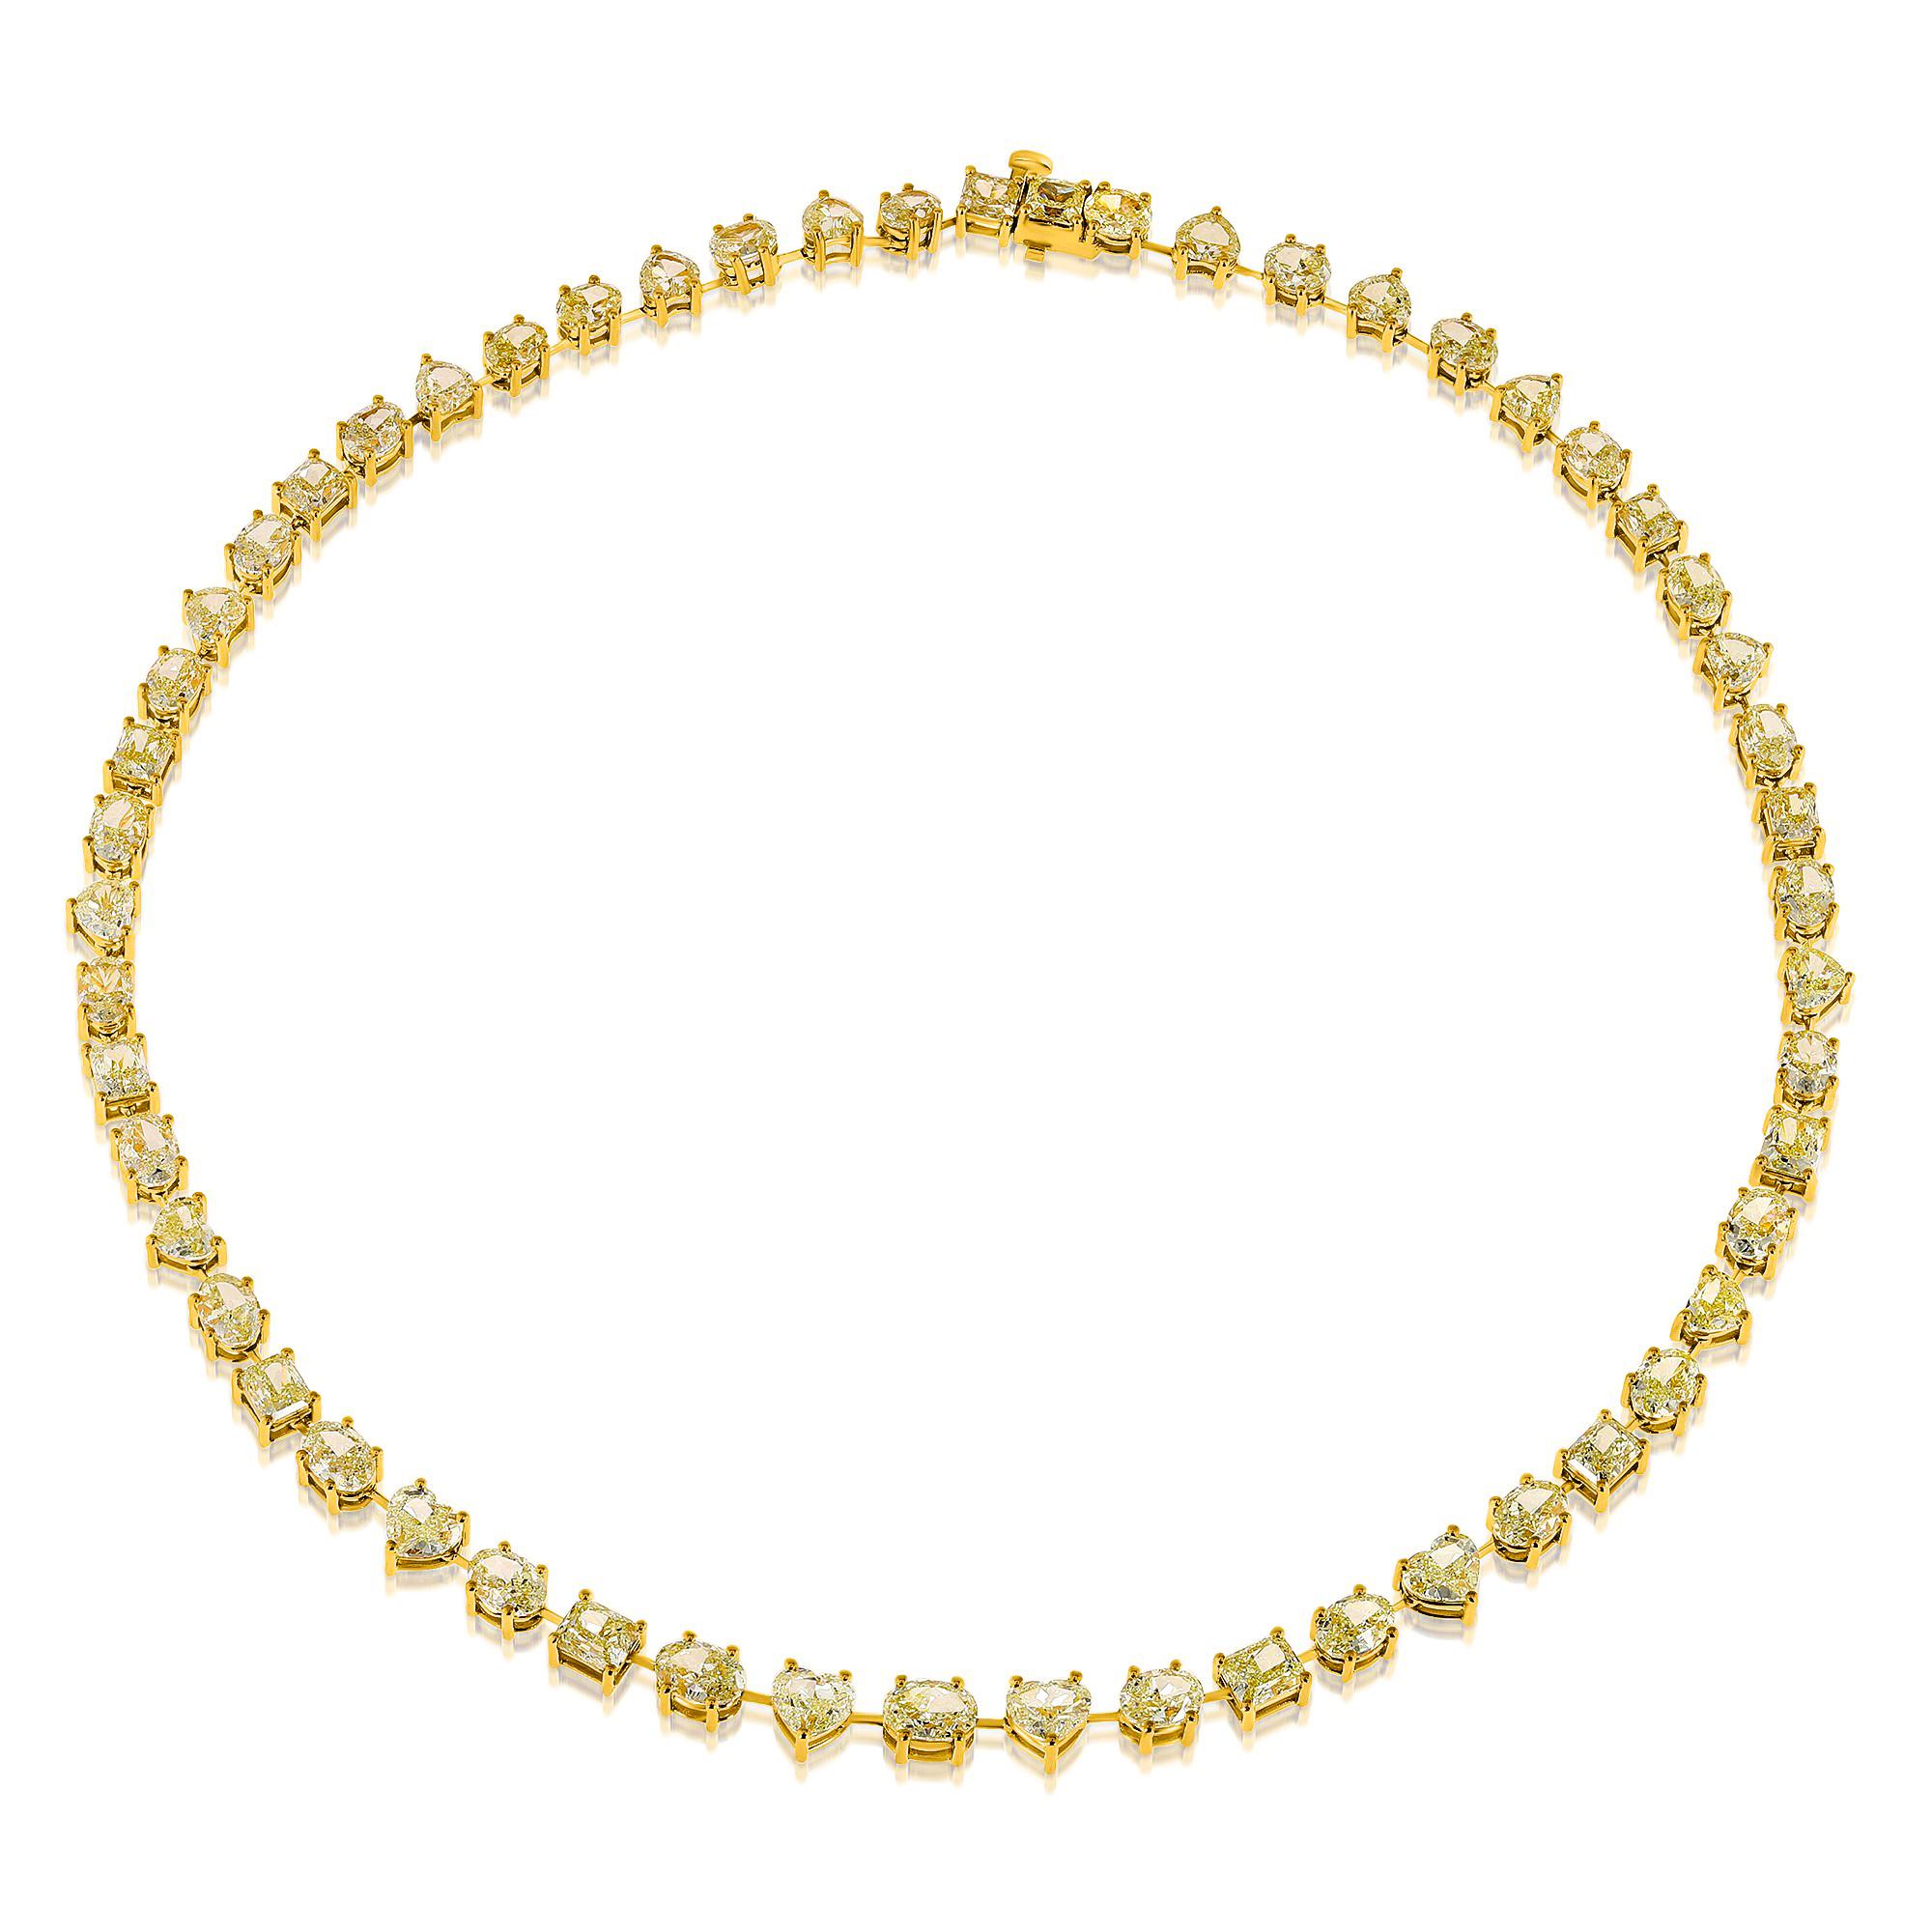 Voici notre extraordinaire collier de tennis en diamant jaune de taille mixte, qui présente un éventail étonnant de 56 diamants jaunes en forme de cœur, de coupe ovale et de forme rayonnante. Ces pierres aux couleurs parfaitement assorties créent un